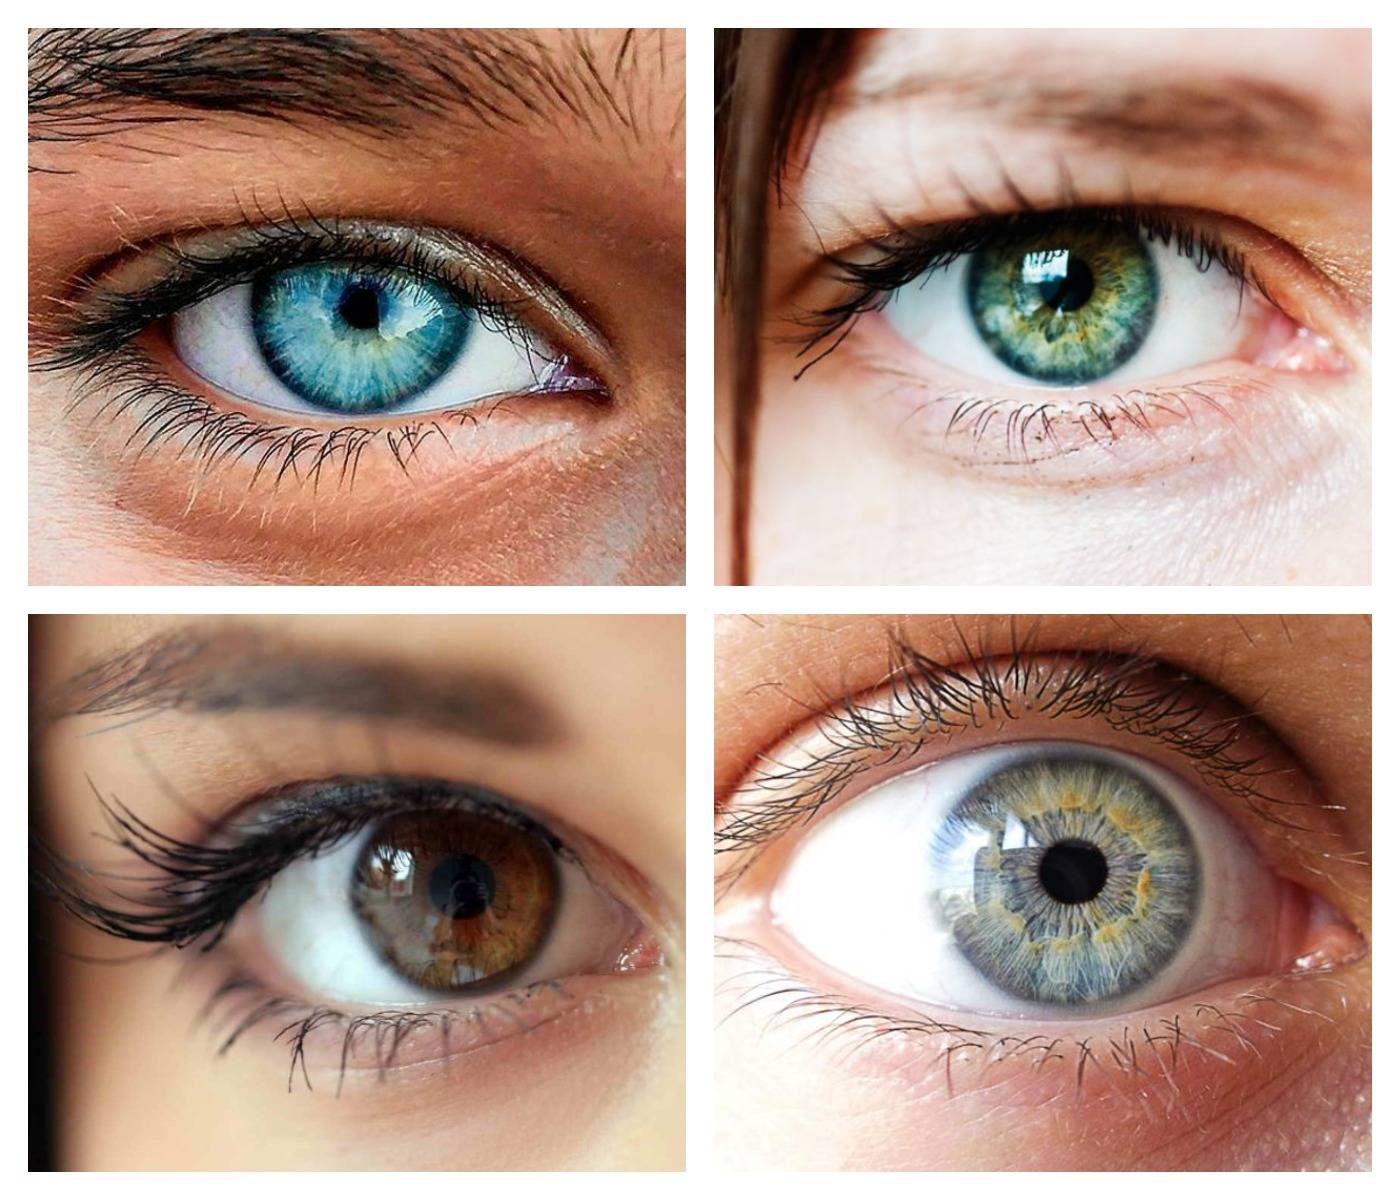 Какие бывают цветом глаза у человека фото